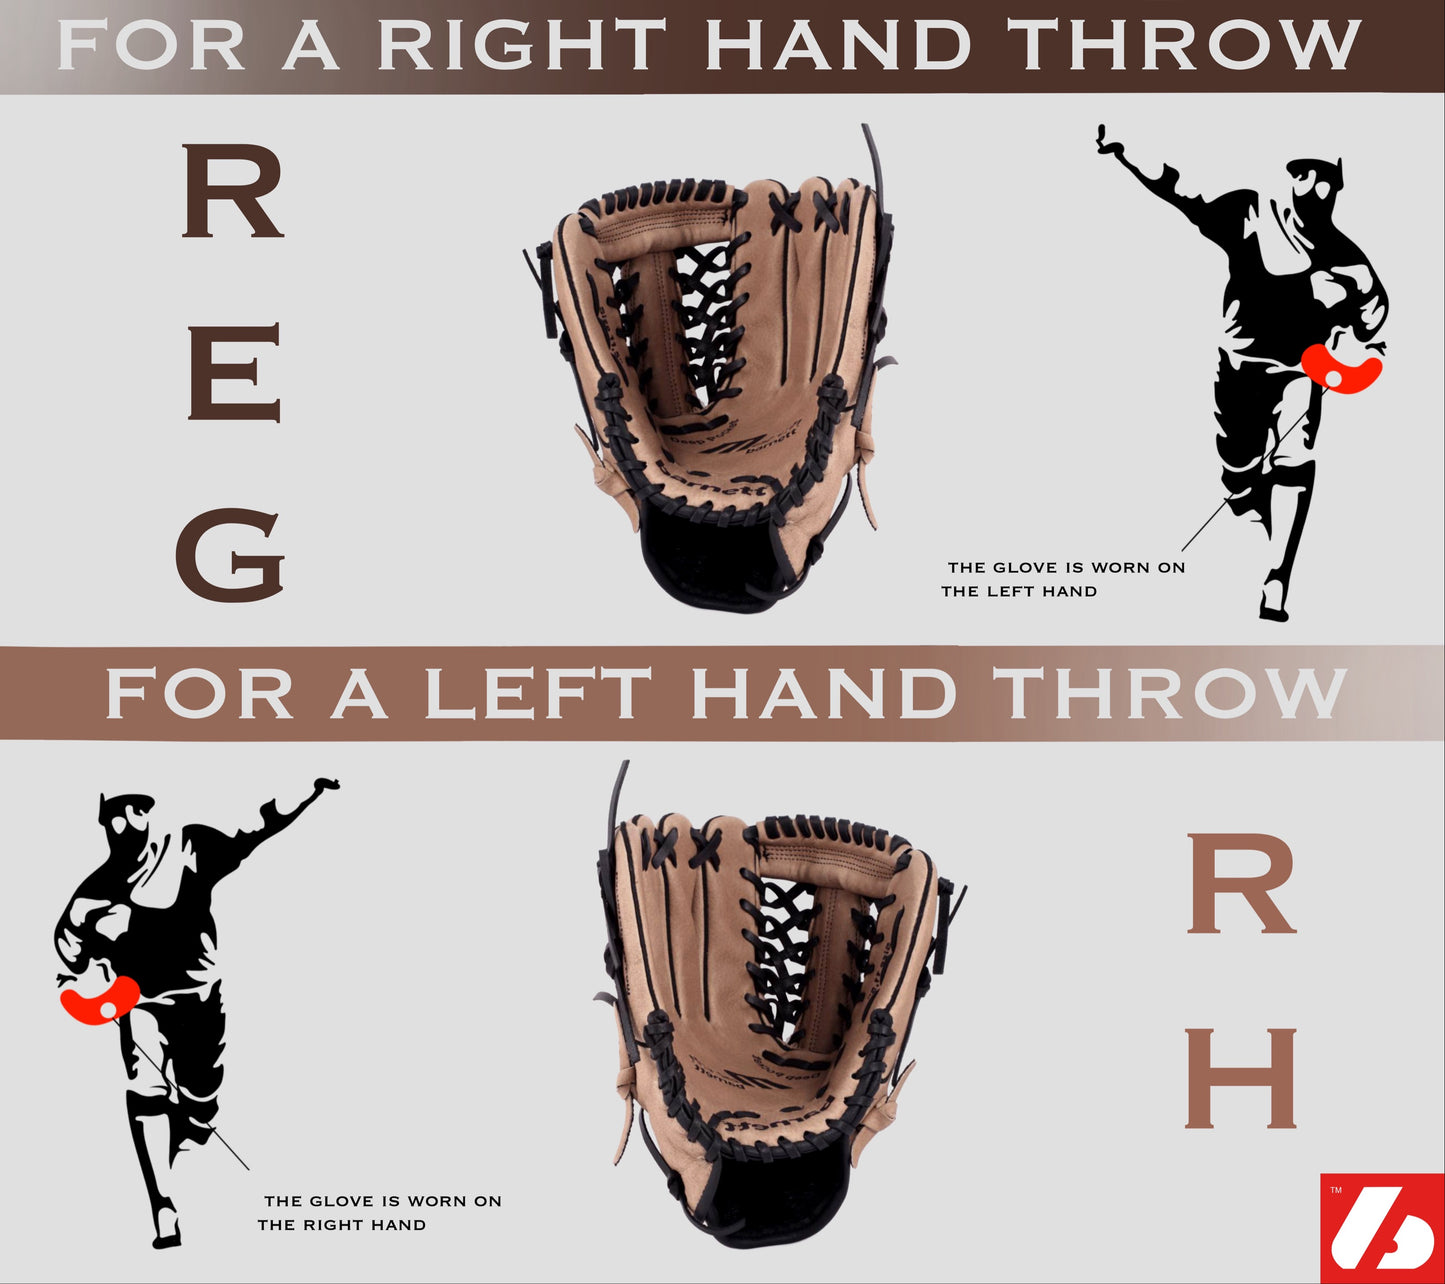 GL-130 Baseball Handschuh, Echtleder, Wettkampf, Outfield & Softball Größe 13 (inch), braun